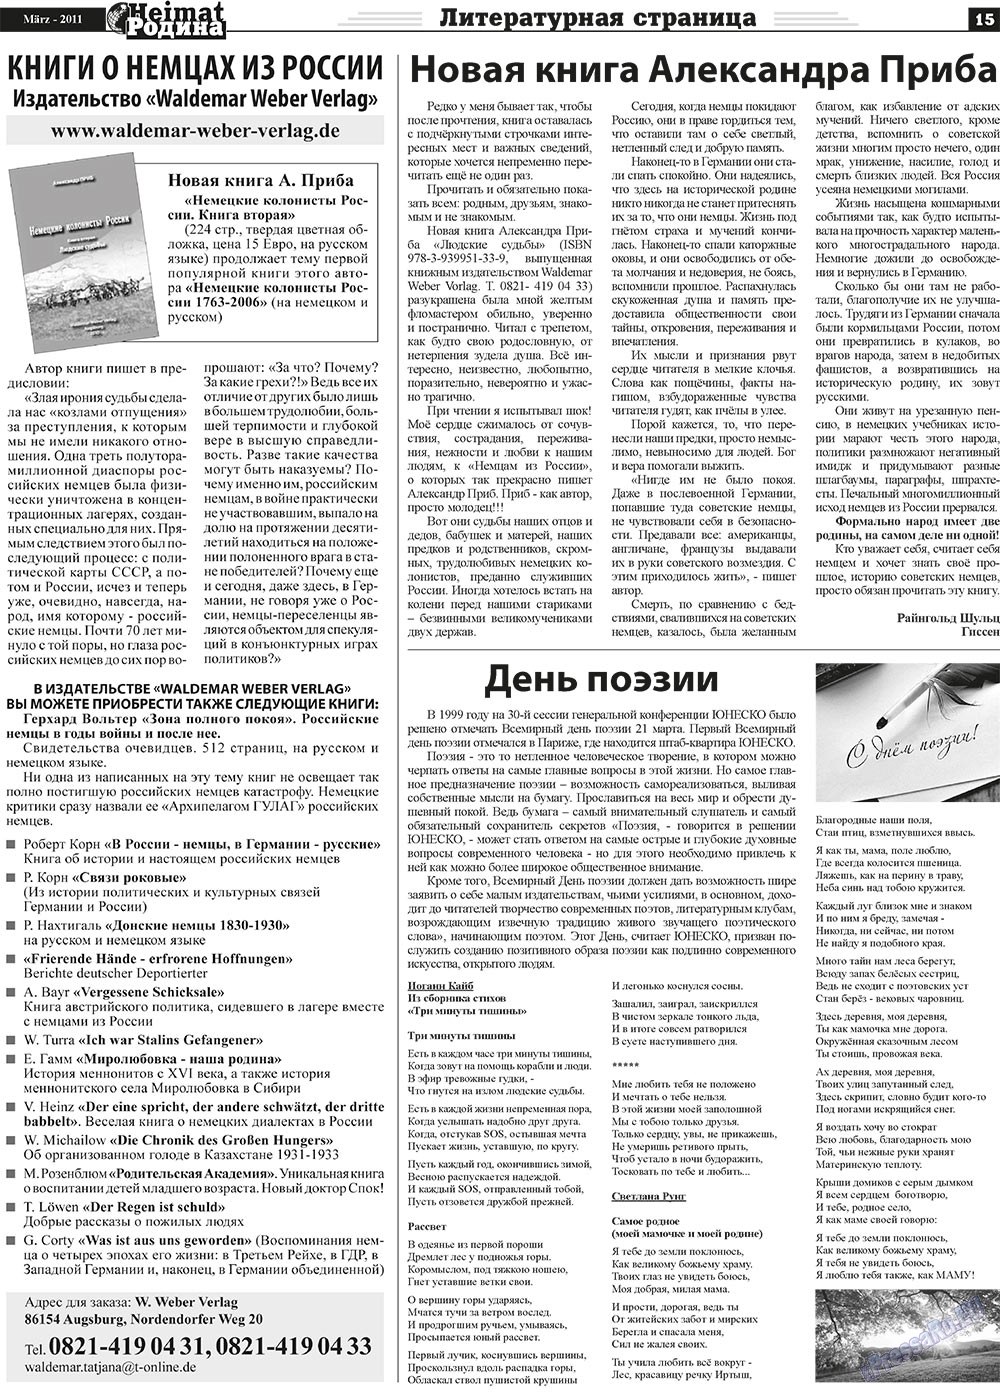 Heimat-Родина (газета). 2011 год, номер 3, стр. 15